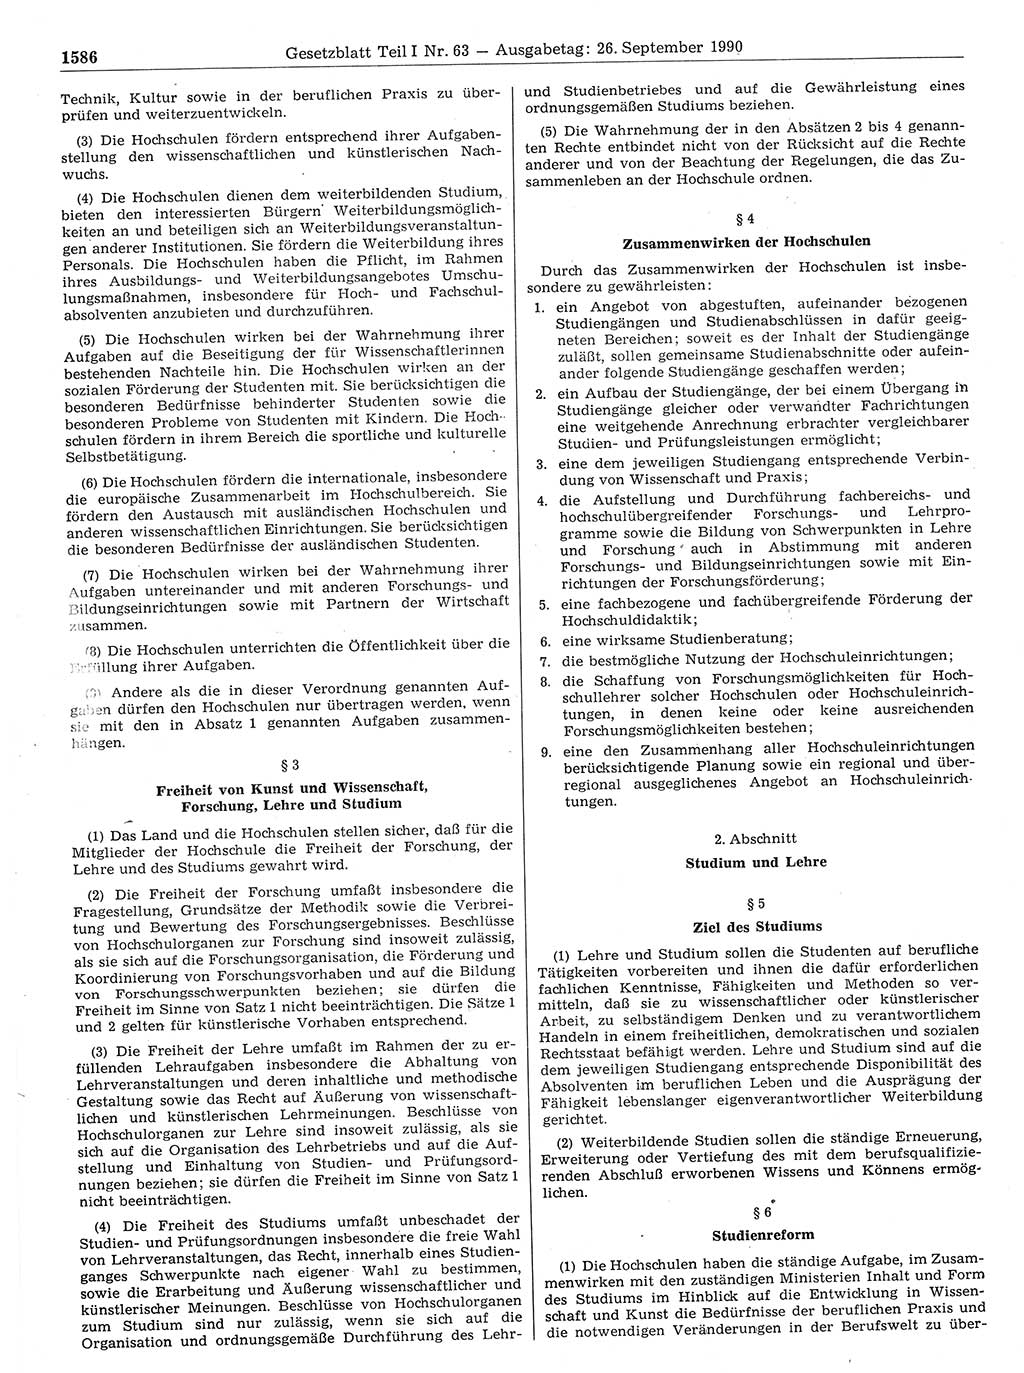 Gesetzblatt (GBl.) der Deutschen Demokratischen Republik (DDR) Teil Ⅰ 1990, Seite 1586 (GBl. DDR Ⅰ 1990, S. 1586)